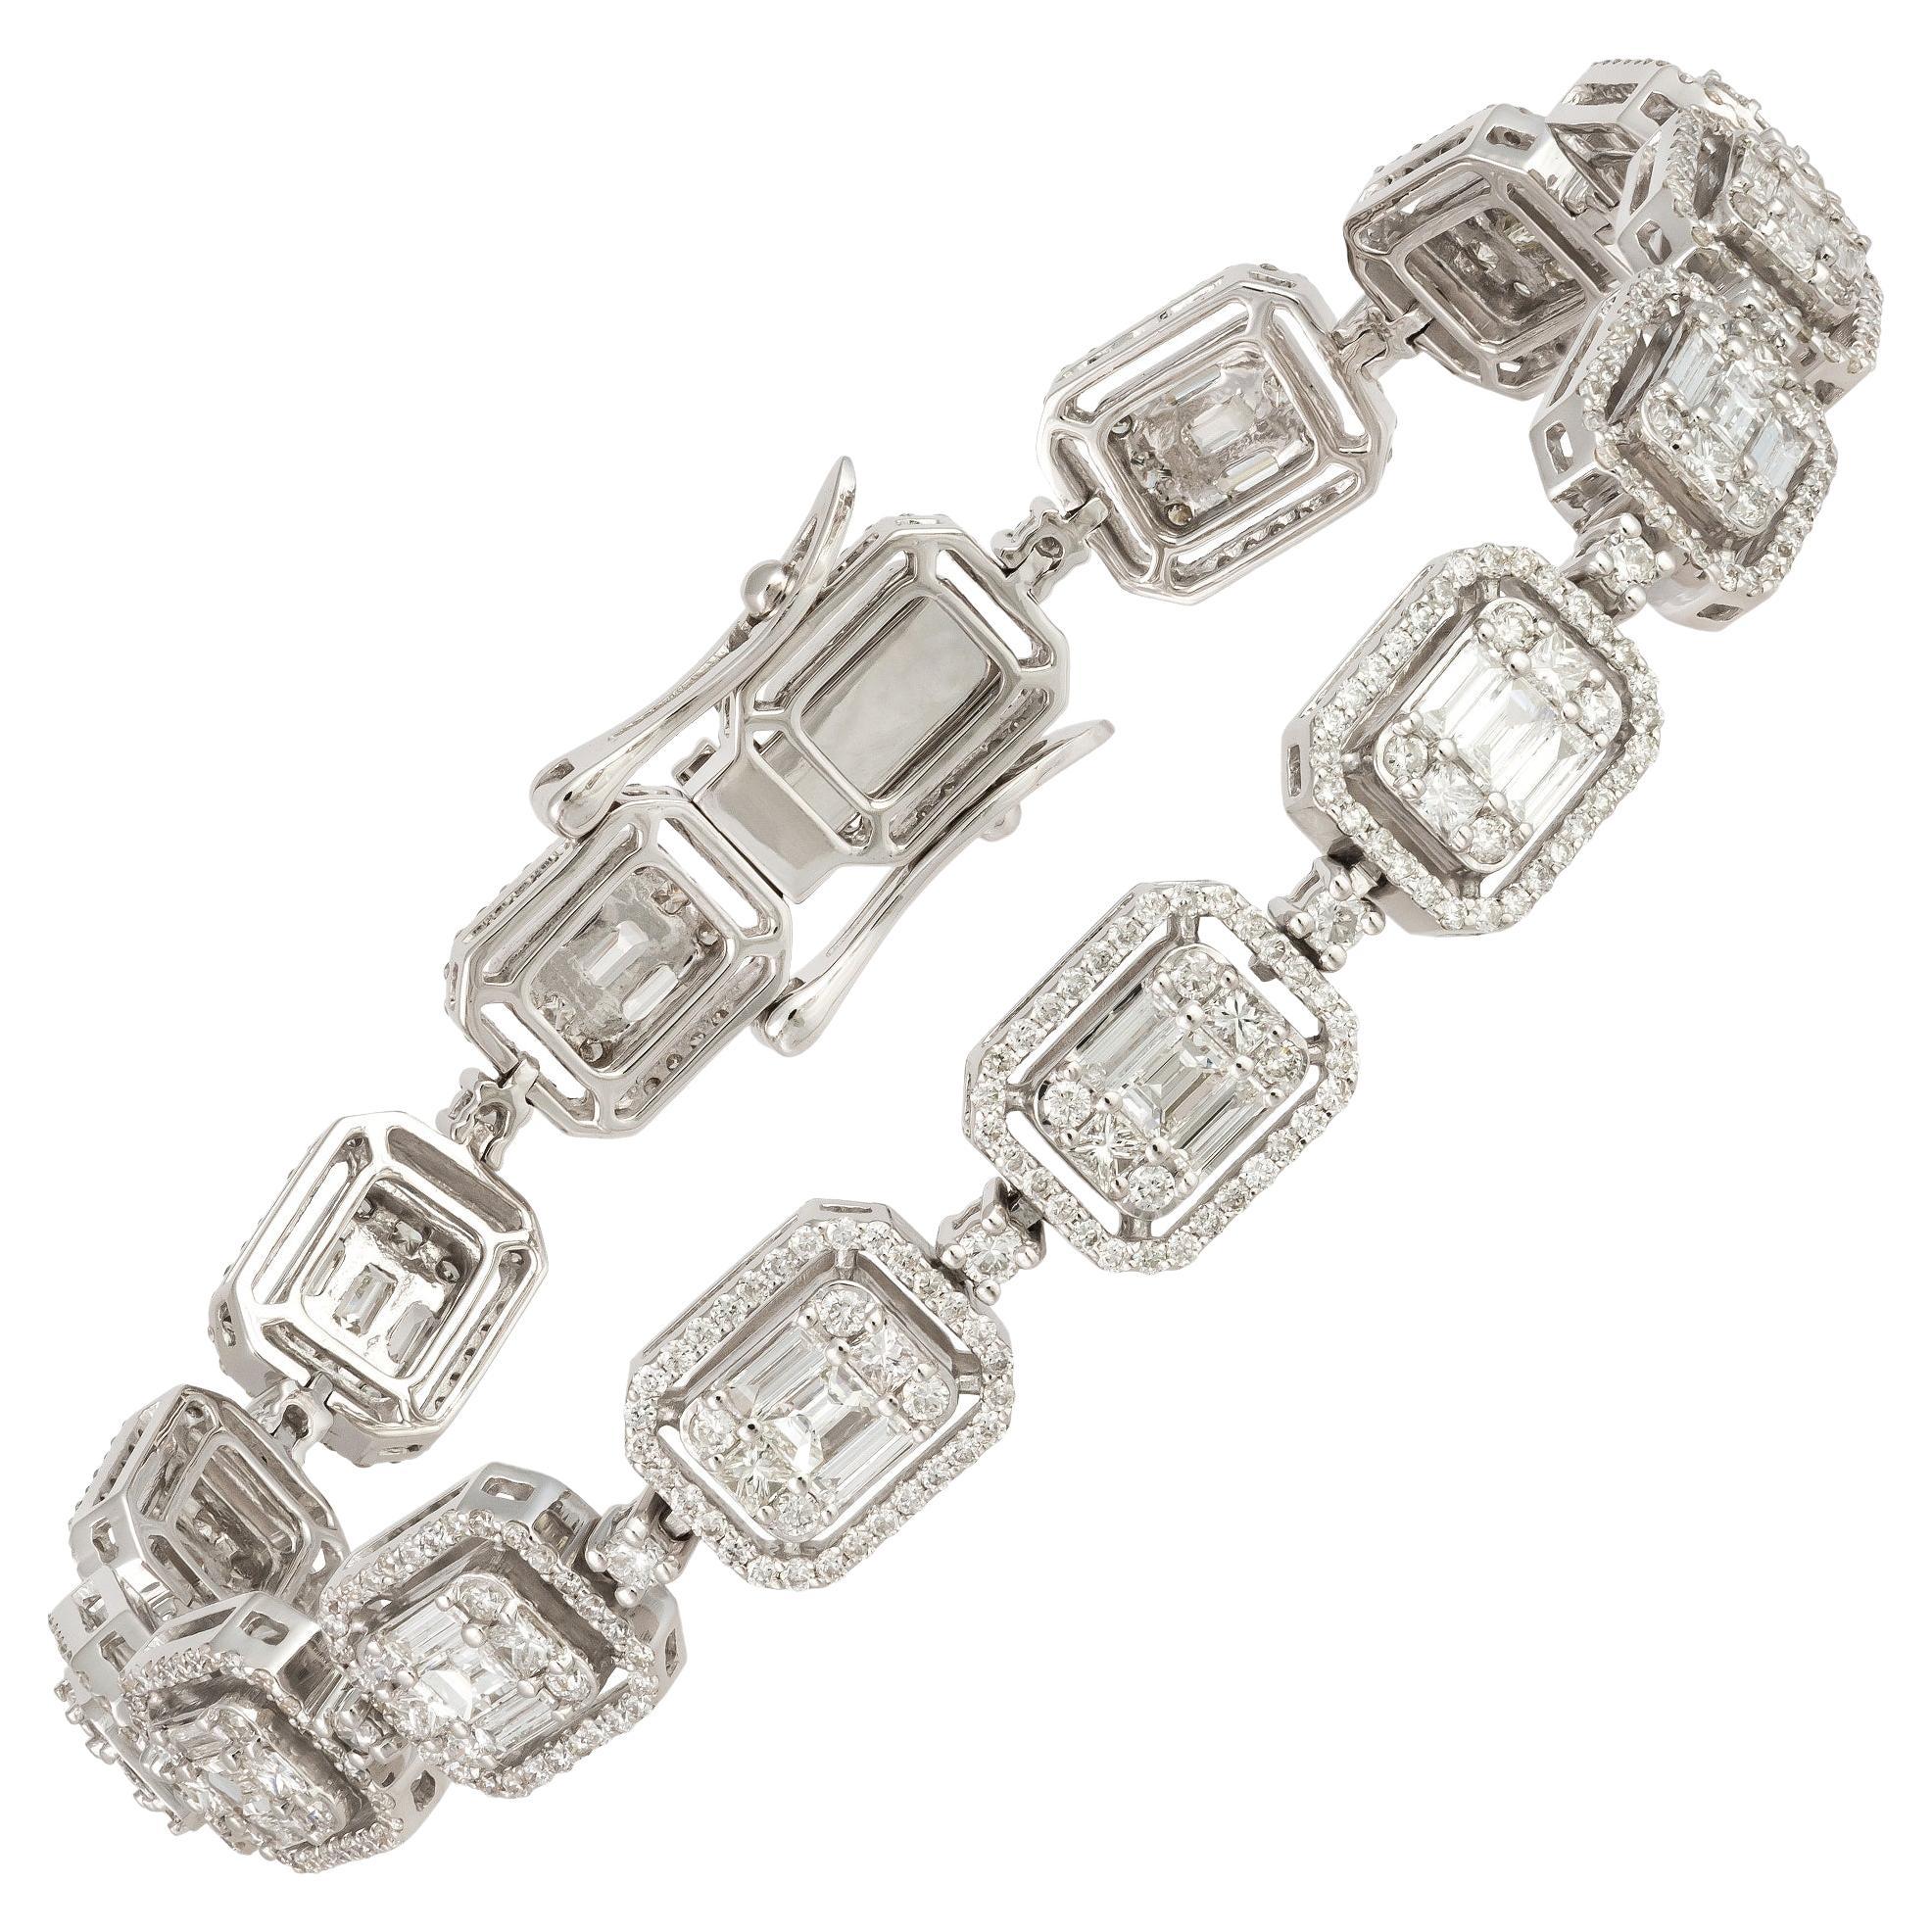 Unique White Gold 18K Diamond Bracelet for Her